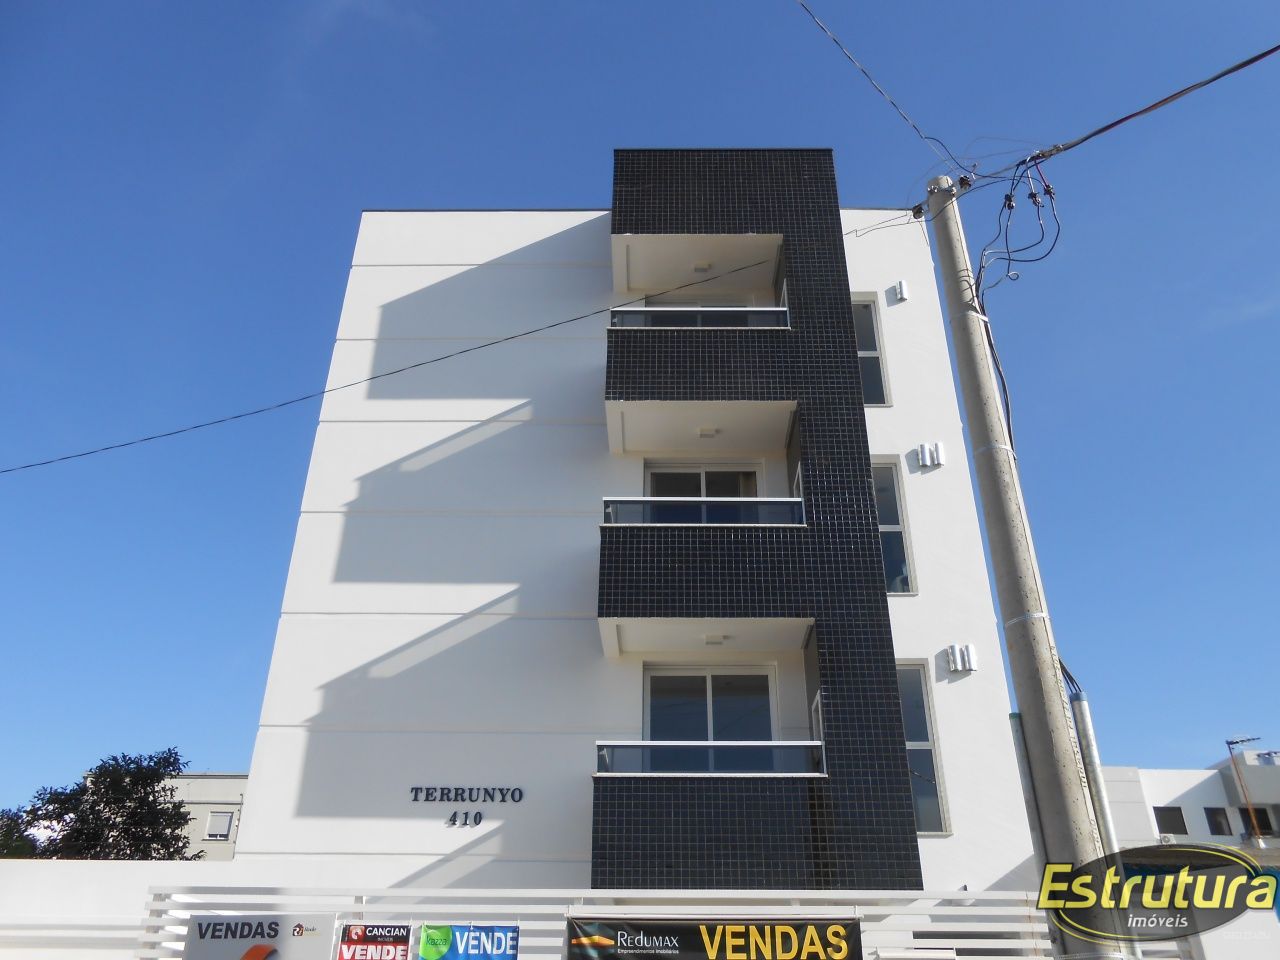 Cobertura com 2 Dormitórios à venda, 103 m² por R$ 469.000,00